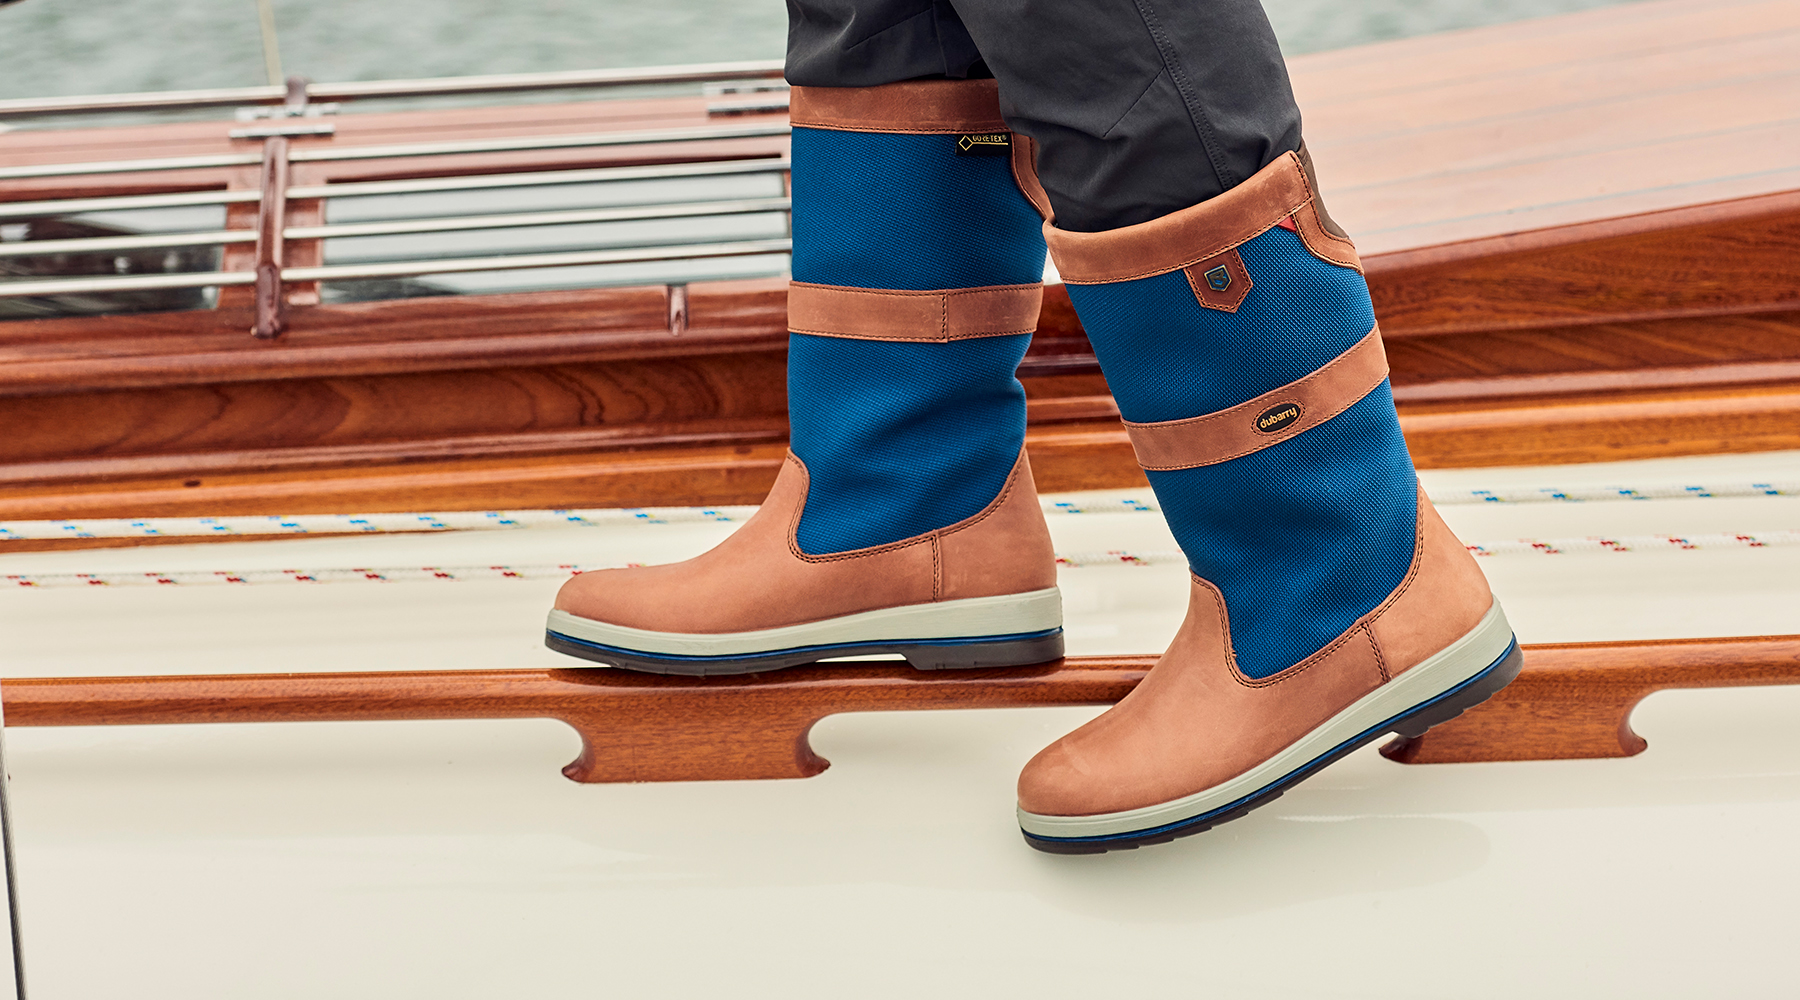 Men's Sailing Boots